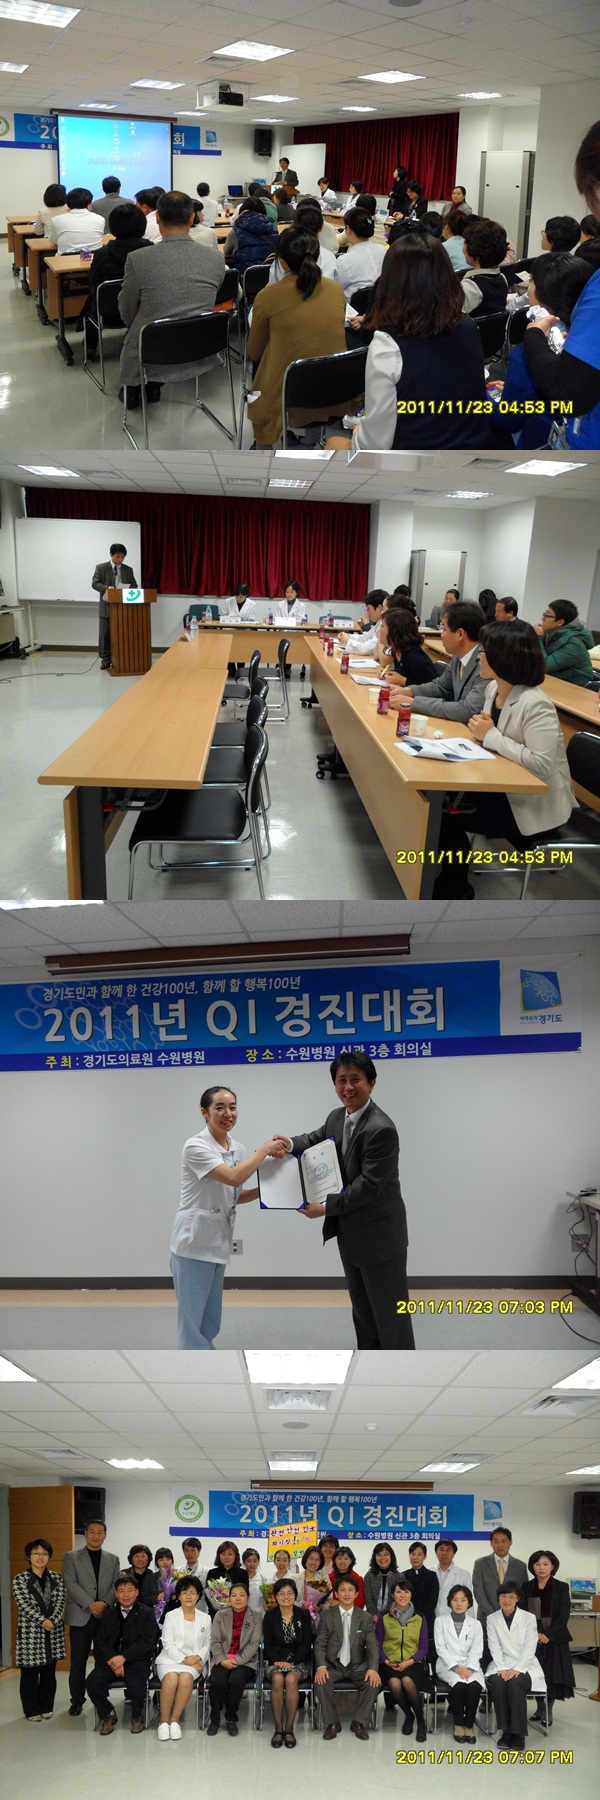 2011년 수원병원 QI경진대회 개최